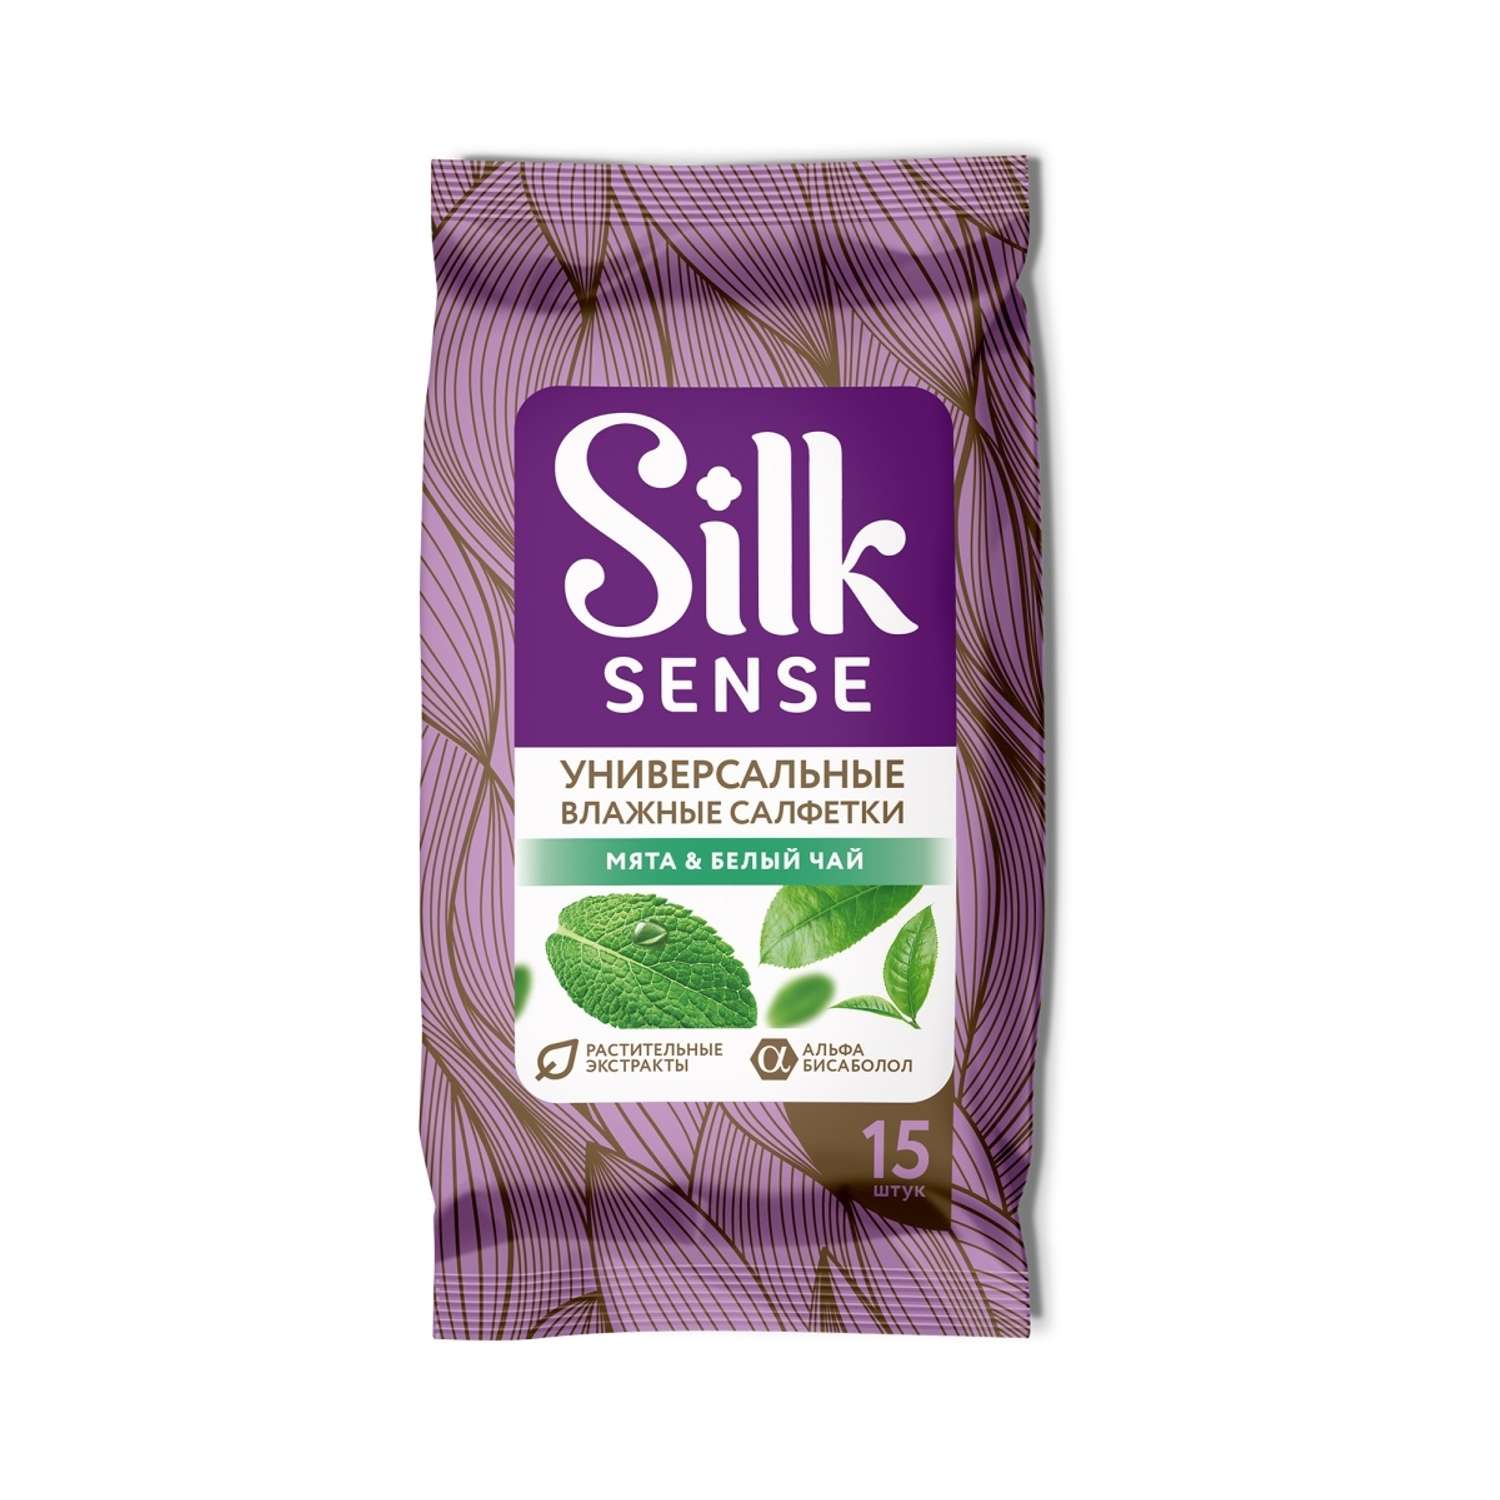 Влажные салфетки Ola! Silk Sense универсальные аромат Белый чай и Мята 15x12 уп.180 - фото 2